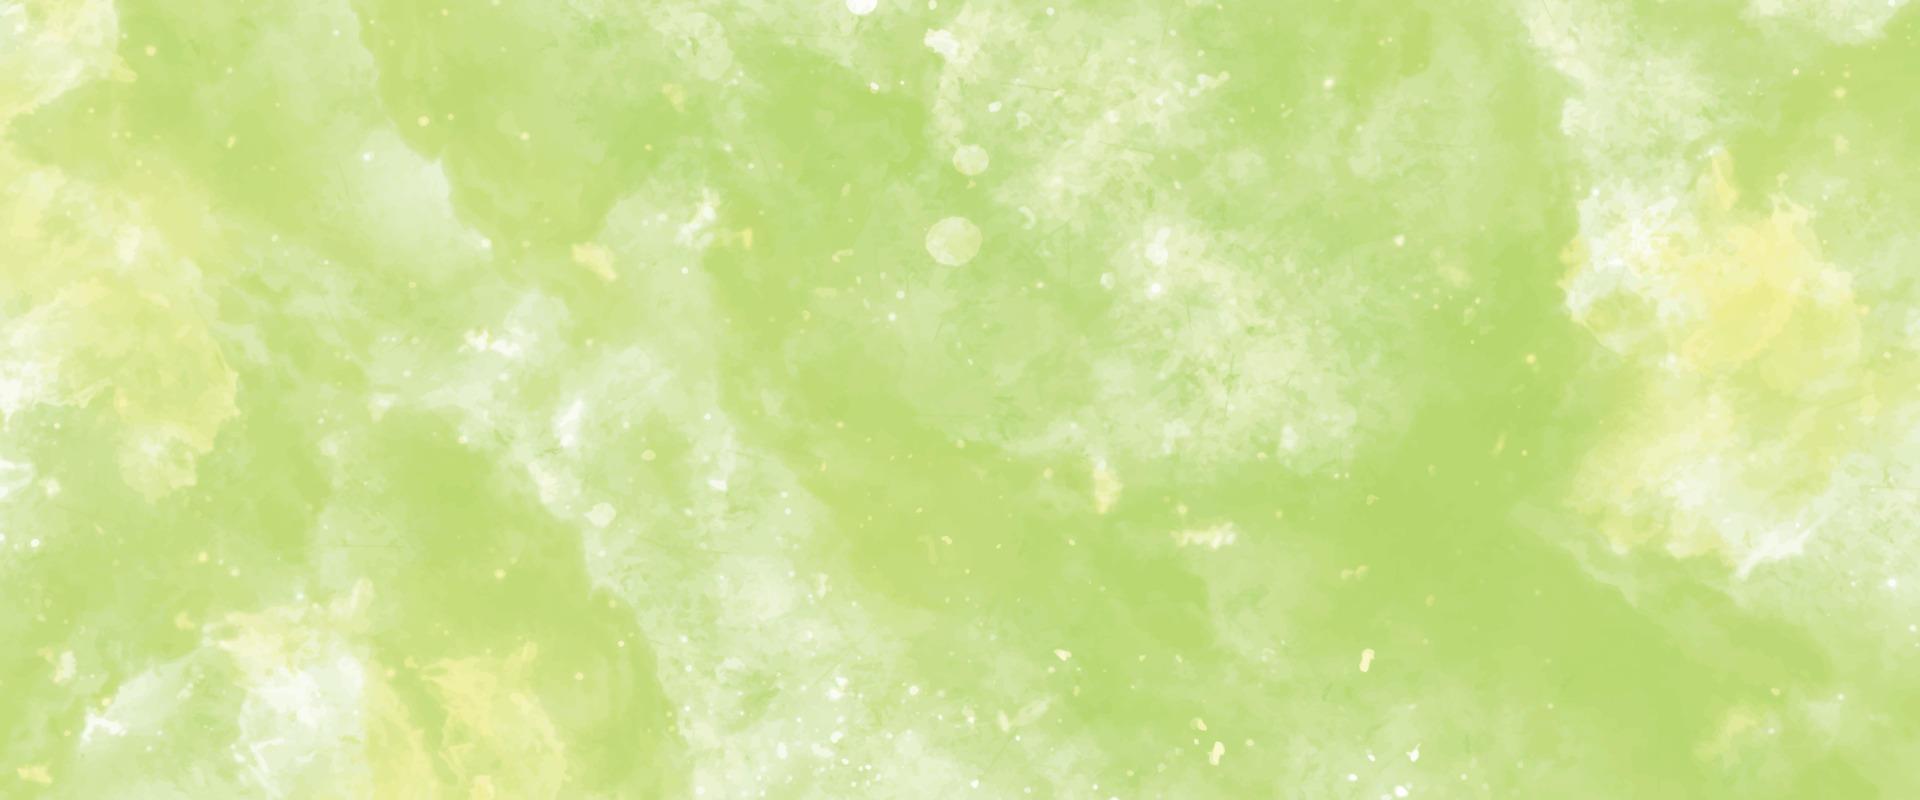 fundo verde abstrato com gotas, textura criativa desenhada à mão de tons de verde e branco. tela de aquarela texturizada de papel aquarela para design criativo moderno. fundo com partículas. lavar água vetor